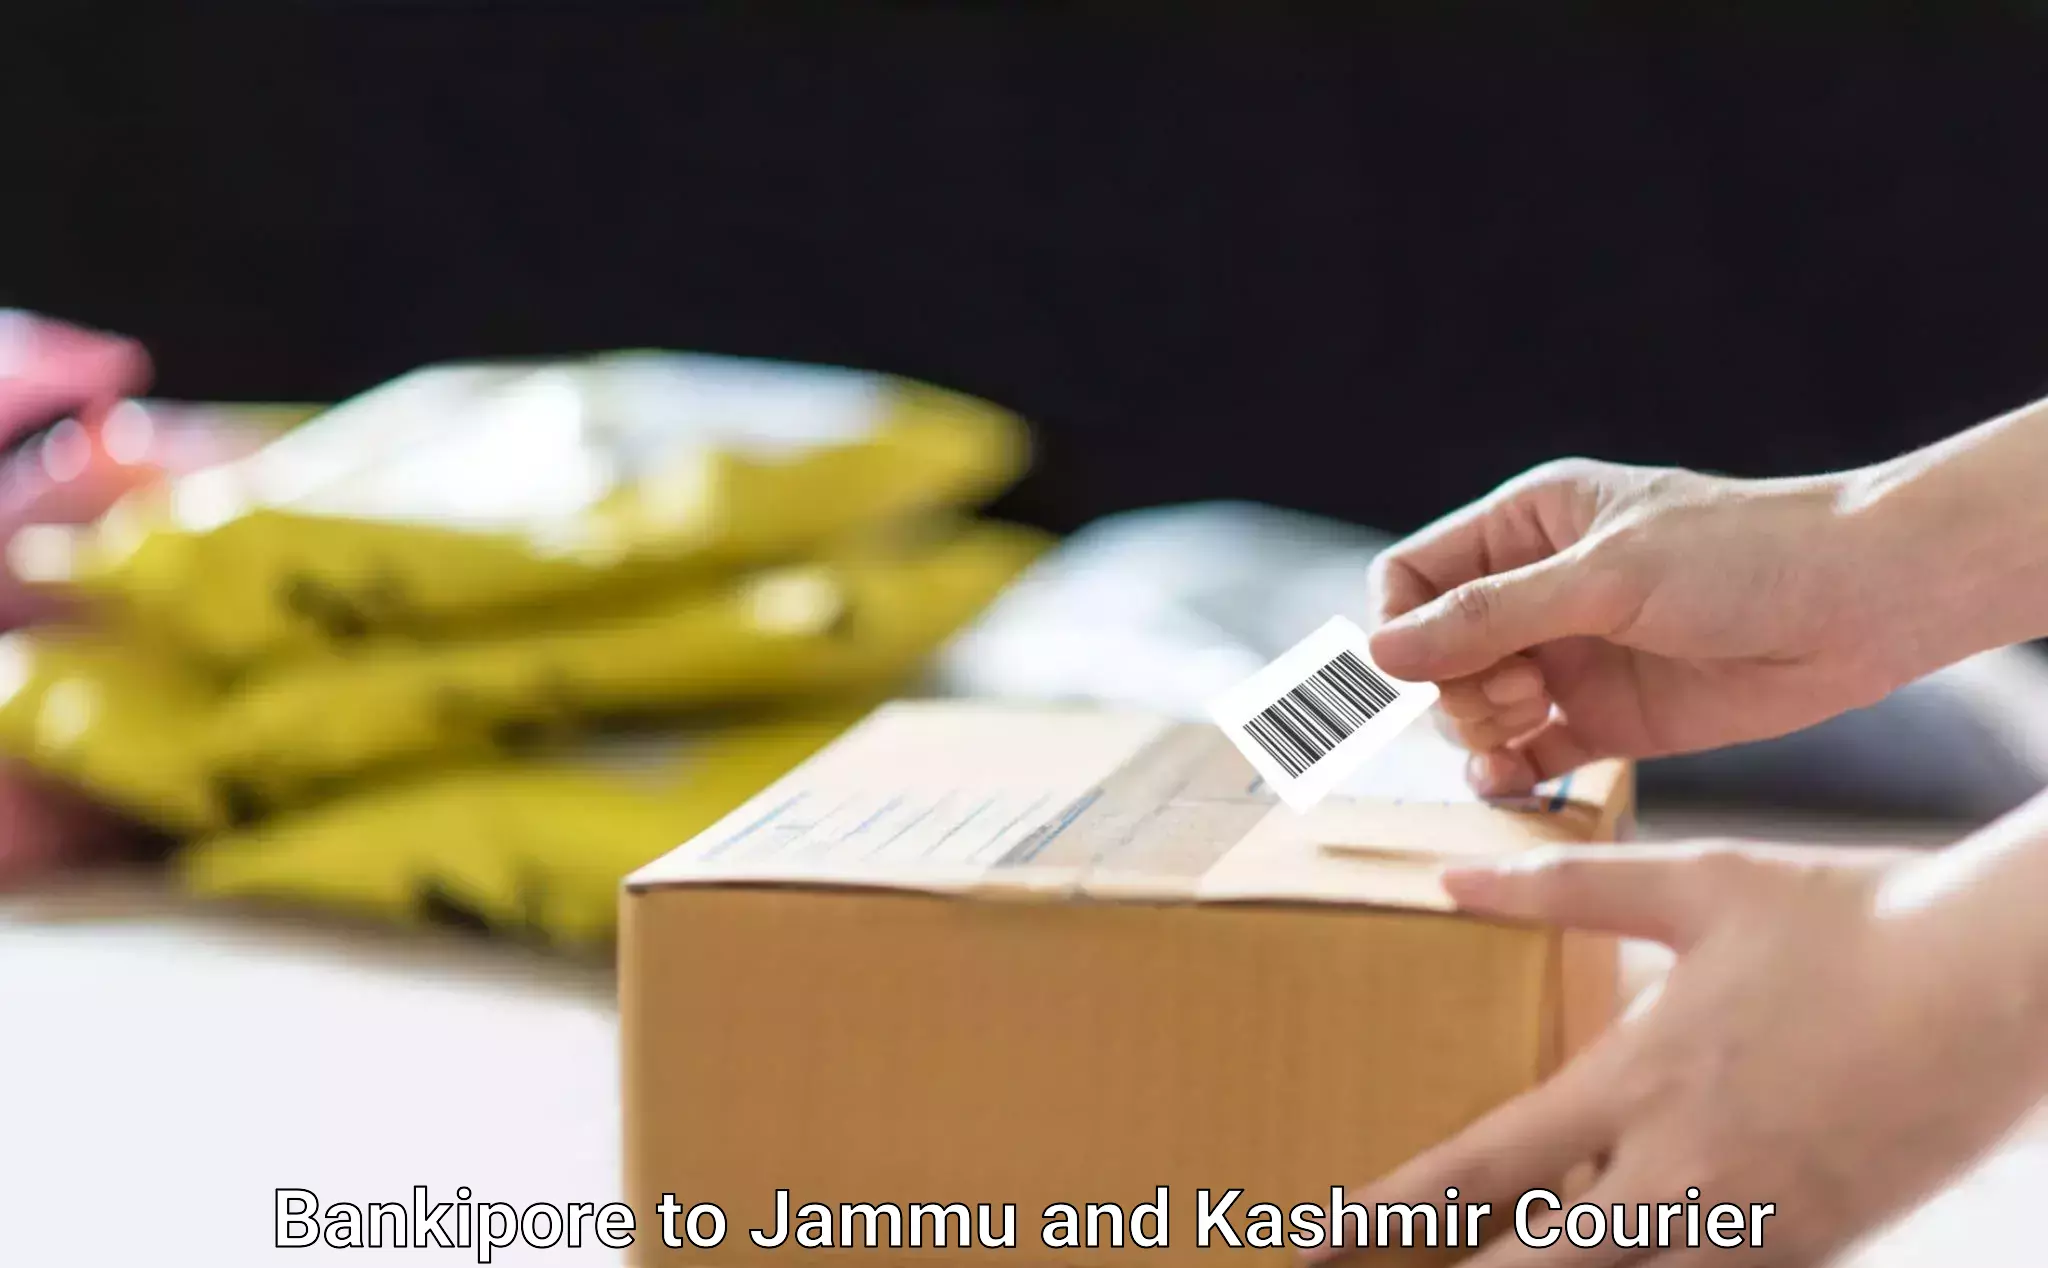 Furniture logistics Bankipore to Jammu and Kashmir